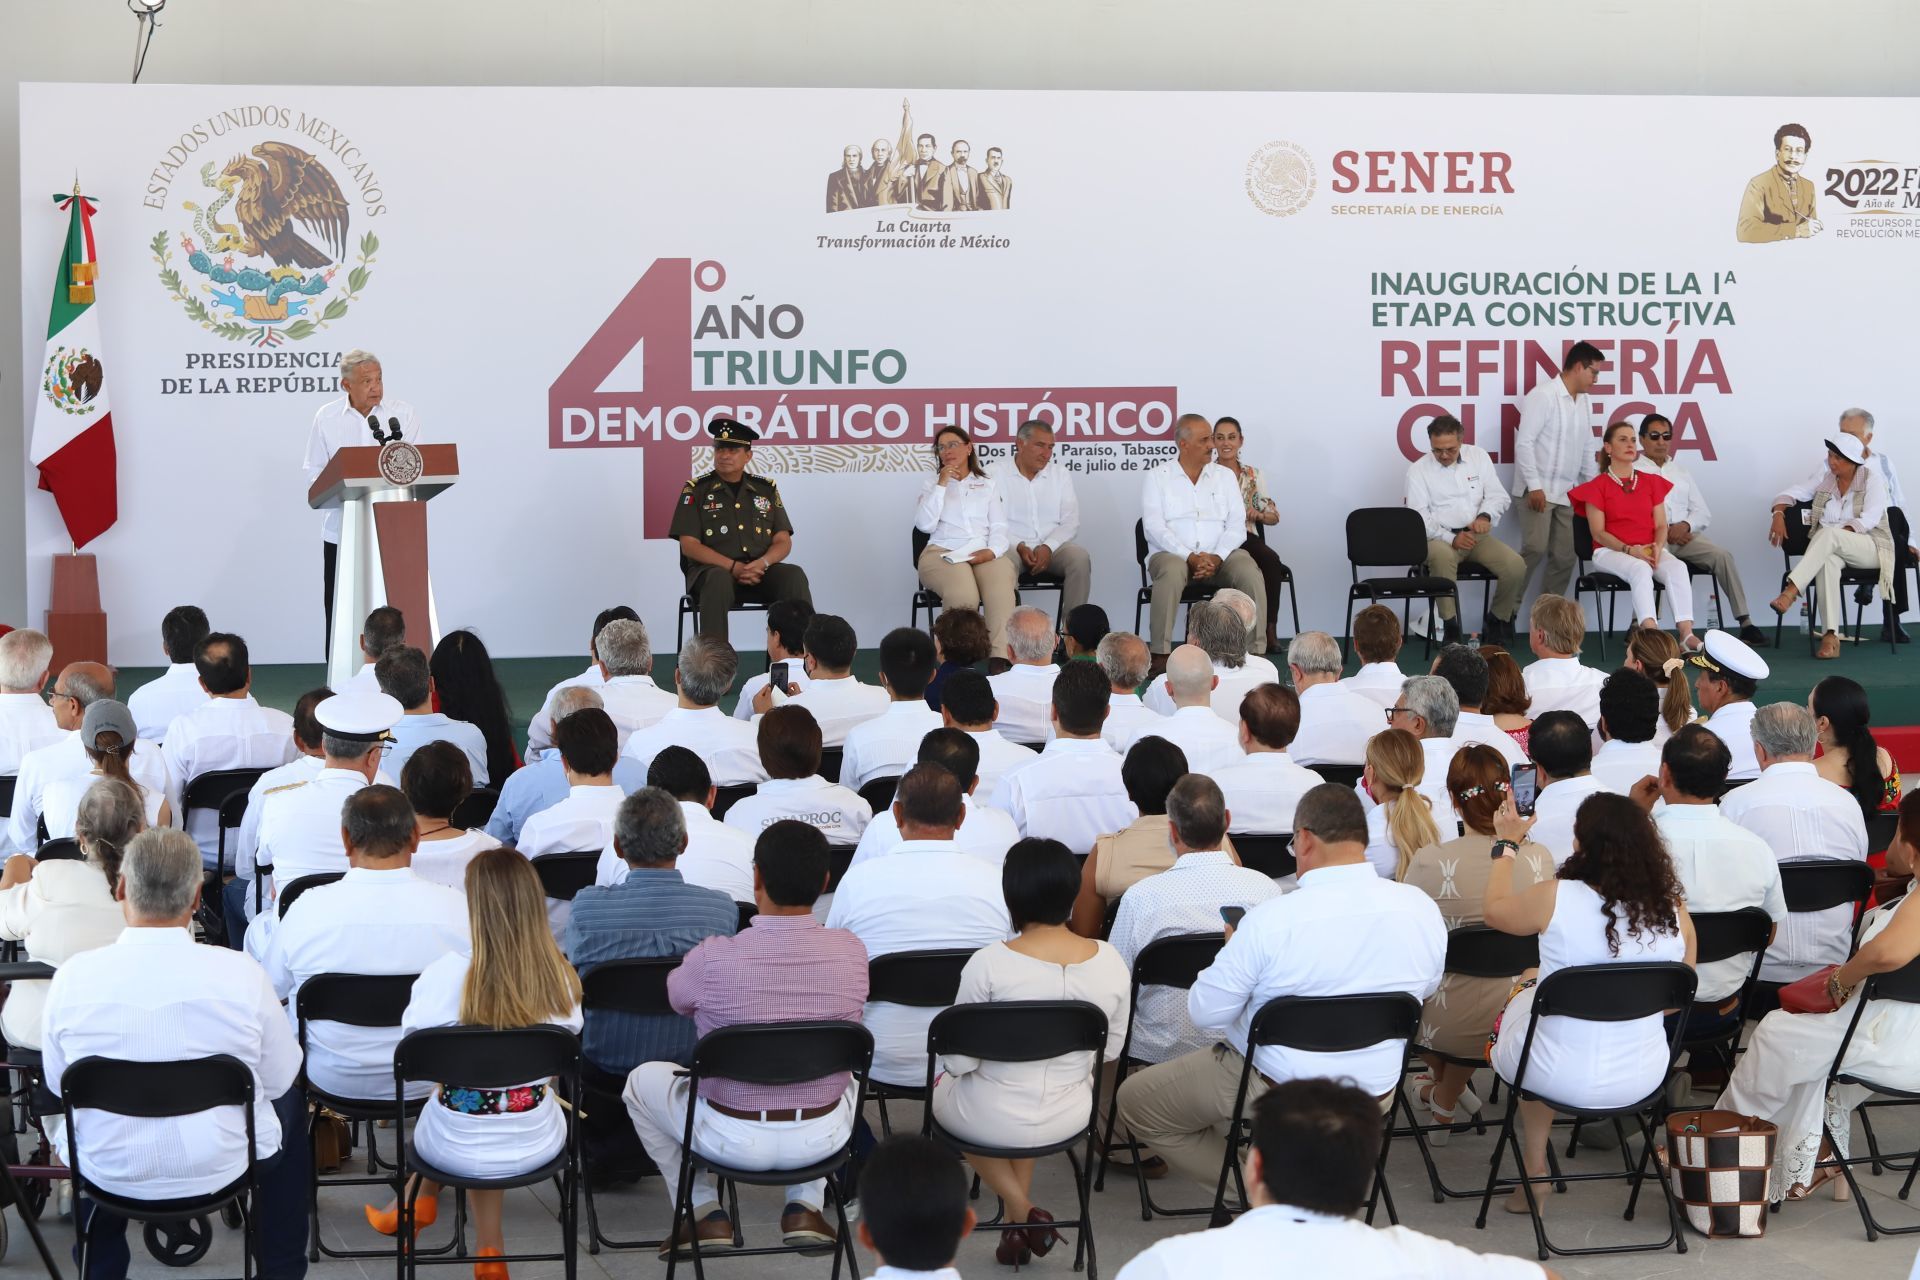 El presidente Andrés Manuel López Obrador inauguró la primera etapa constructiva de la refinería “Olmeca” Dos Bocas donde también ofreció un mensaje a la nación con motivo del cuarto aniversario de su triunfo en las urnas (Cuartoscuro)